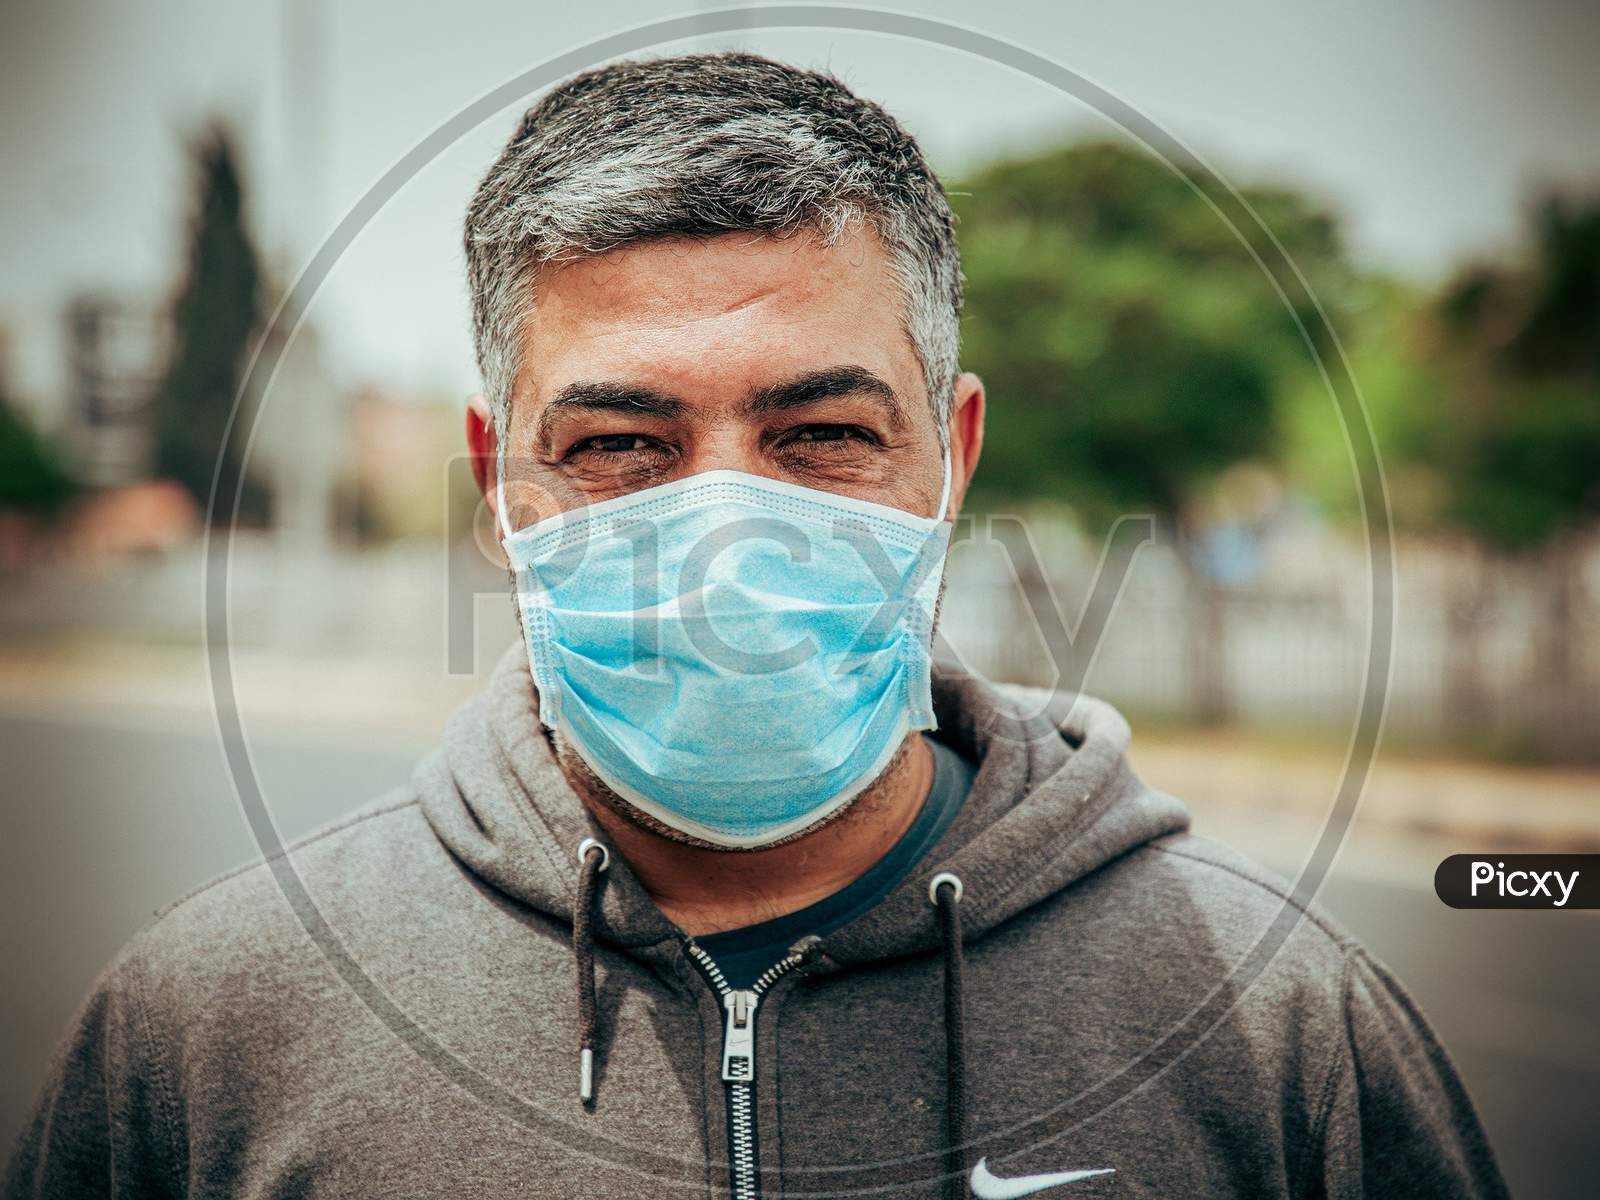 Facemask quarantine